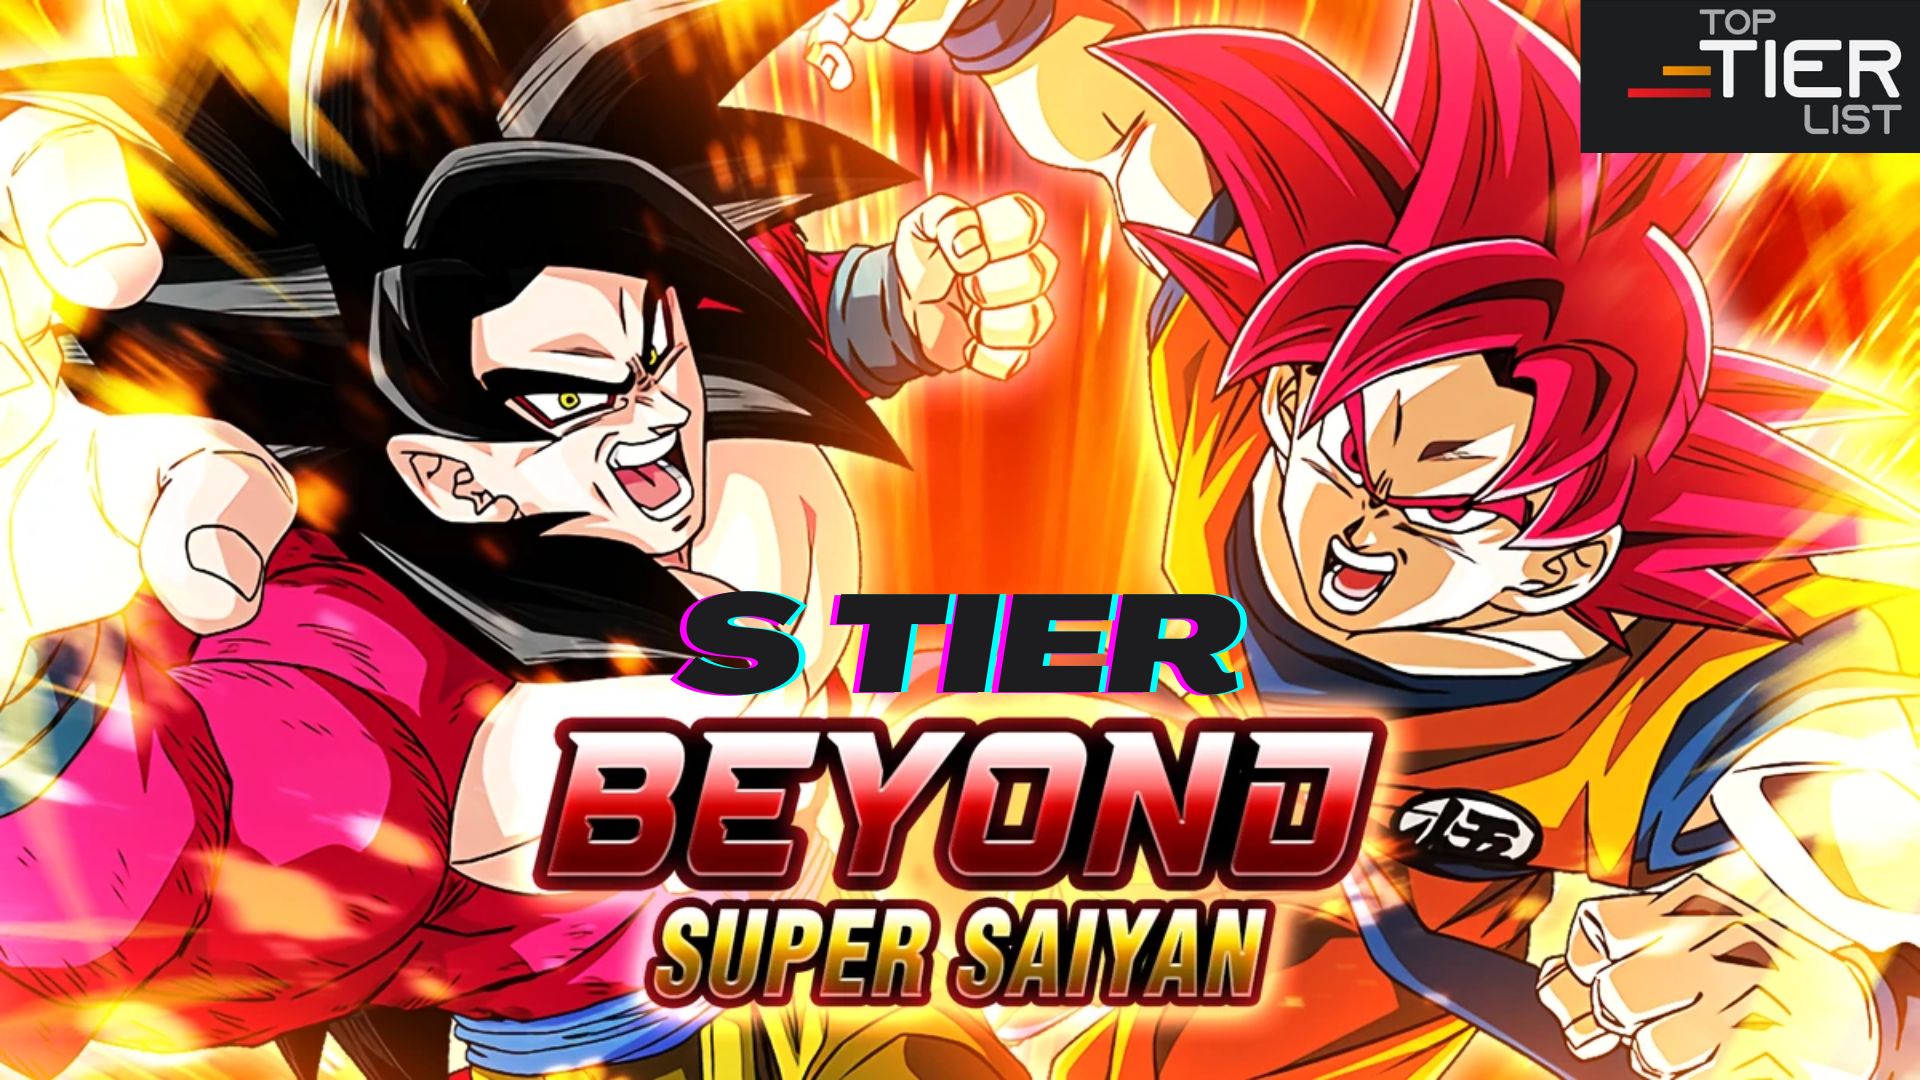 Power Beyond Super Saiyan